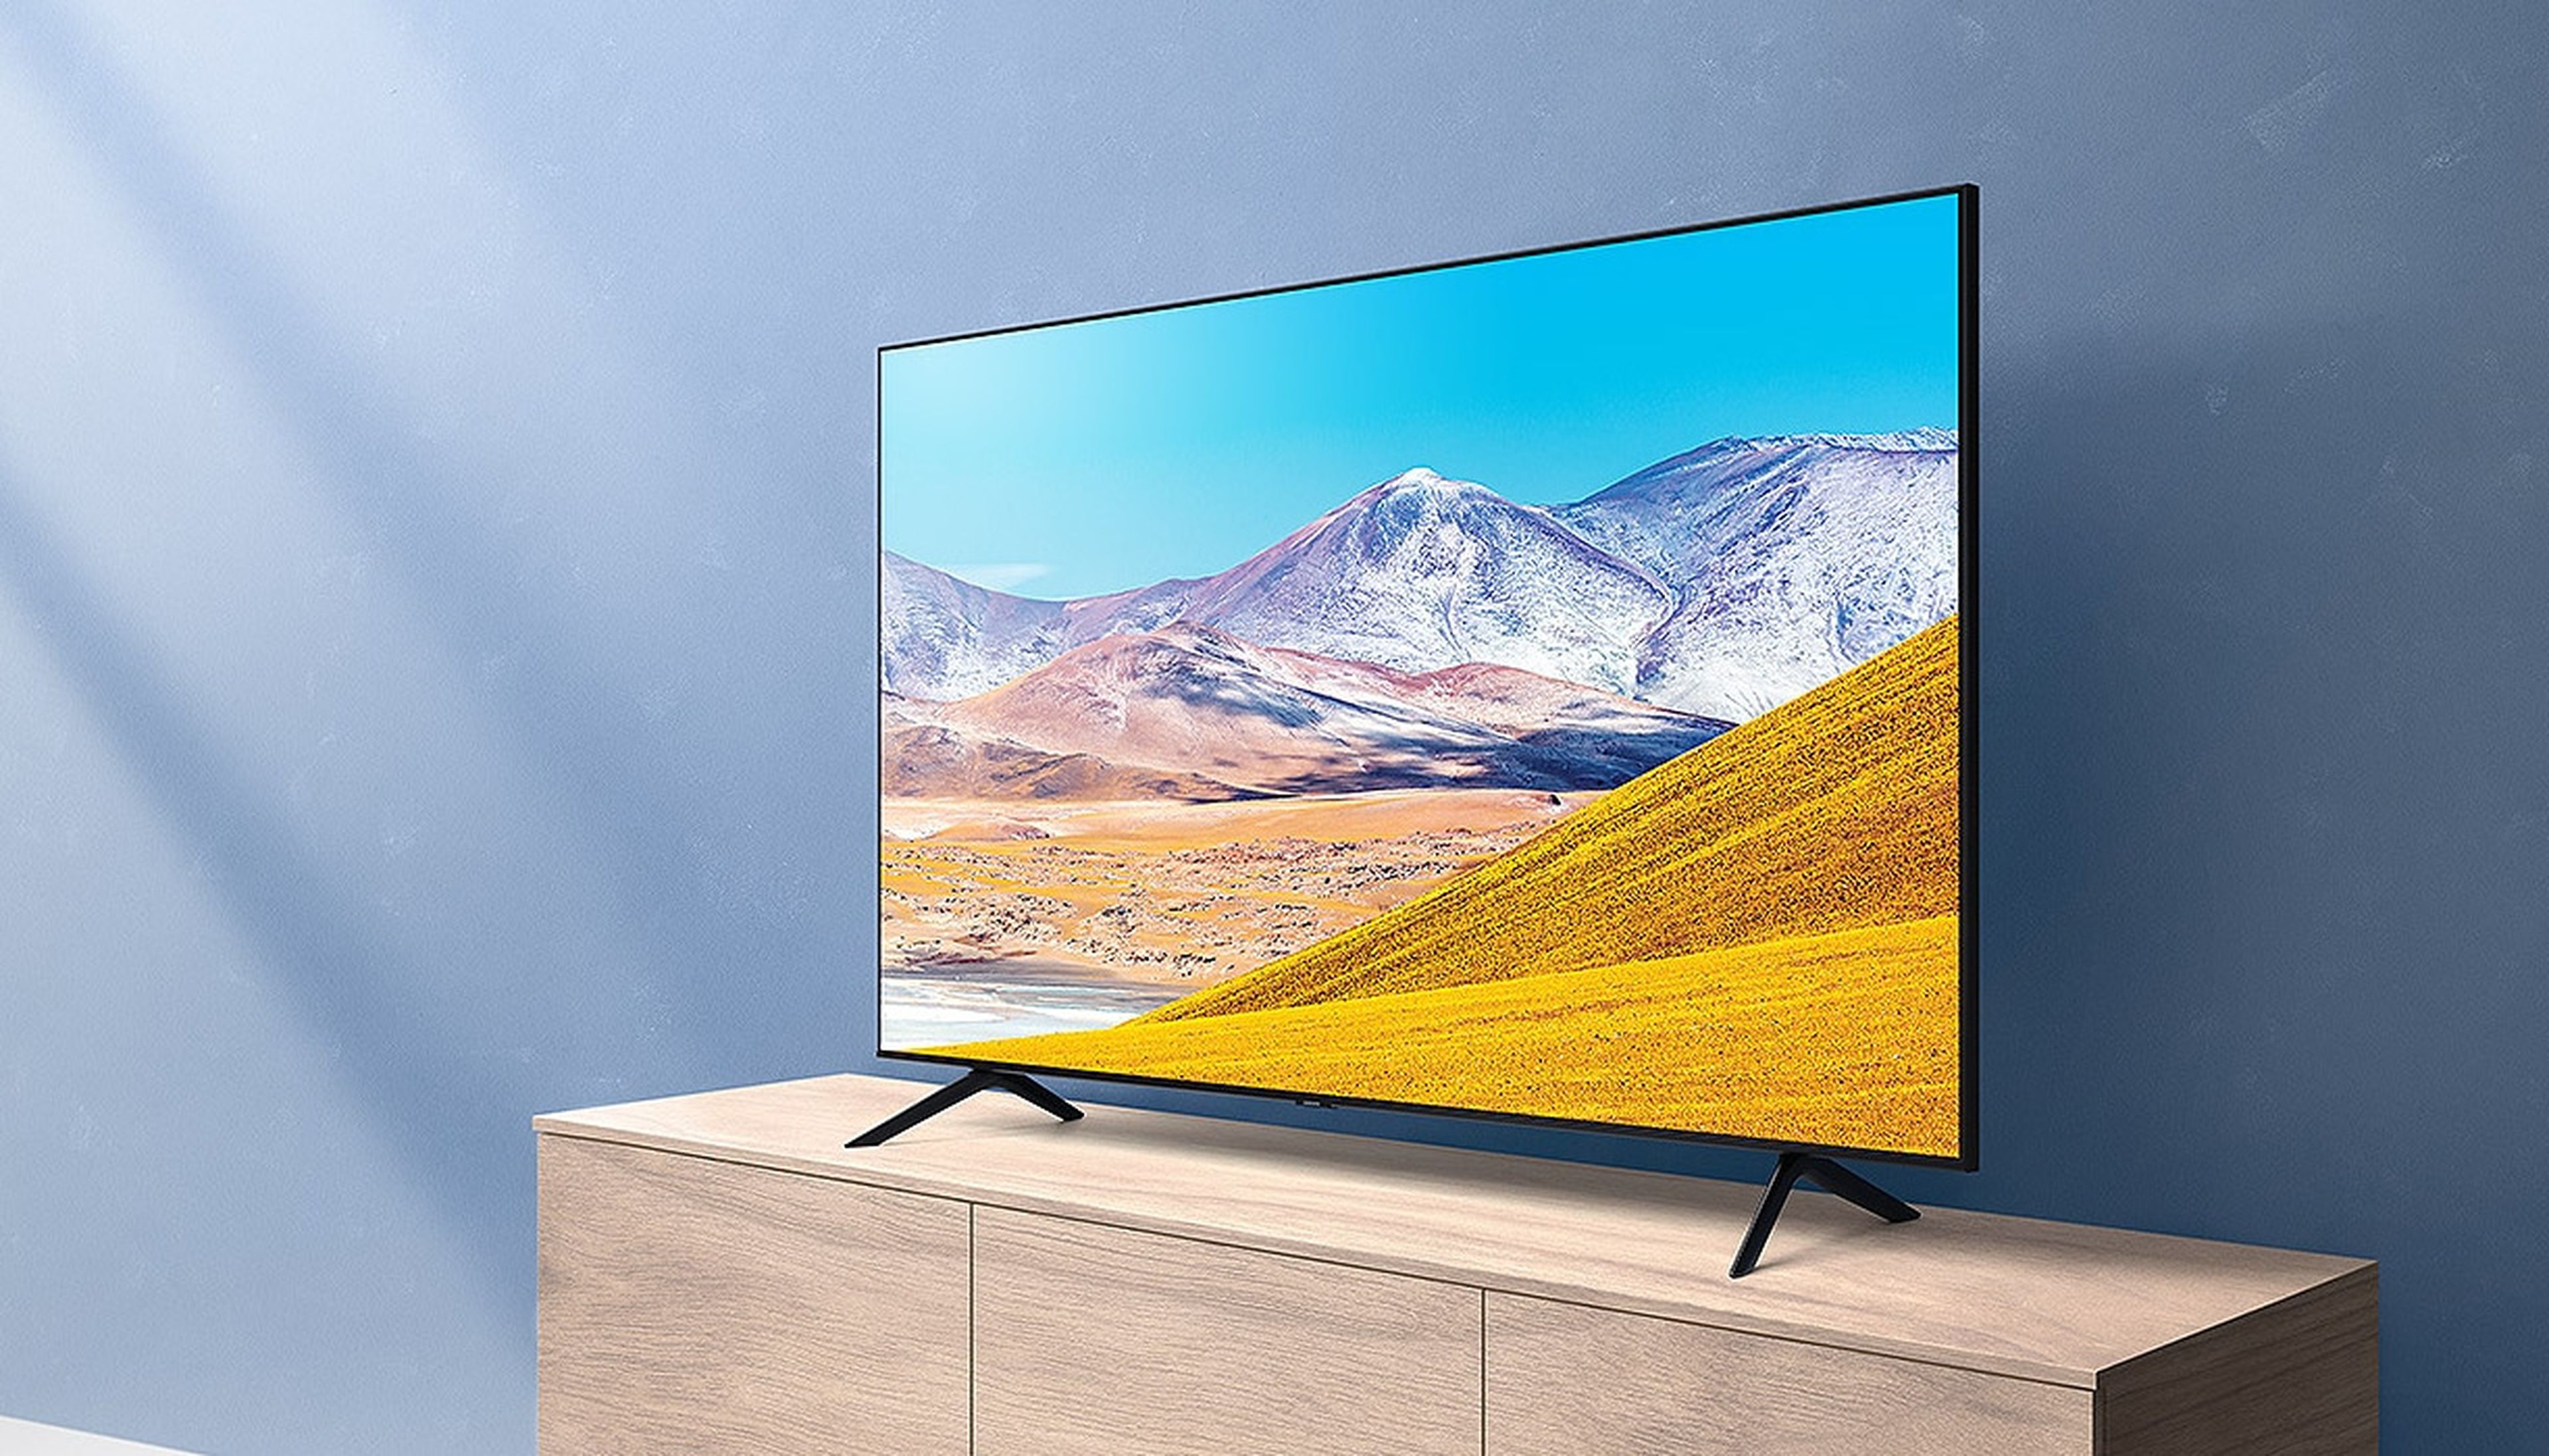 Pantalla Samsung 55 Pulgadas Smart TV Crystal UHD 4K a precio de socio